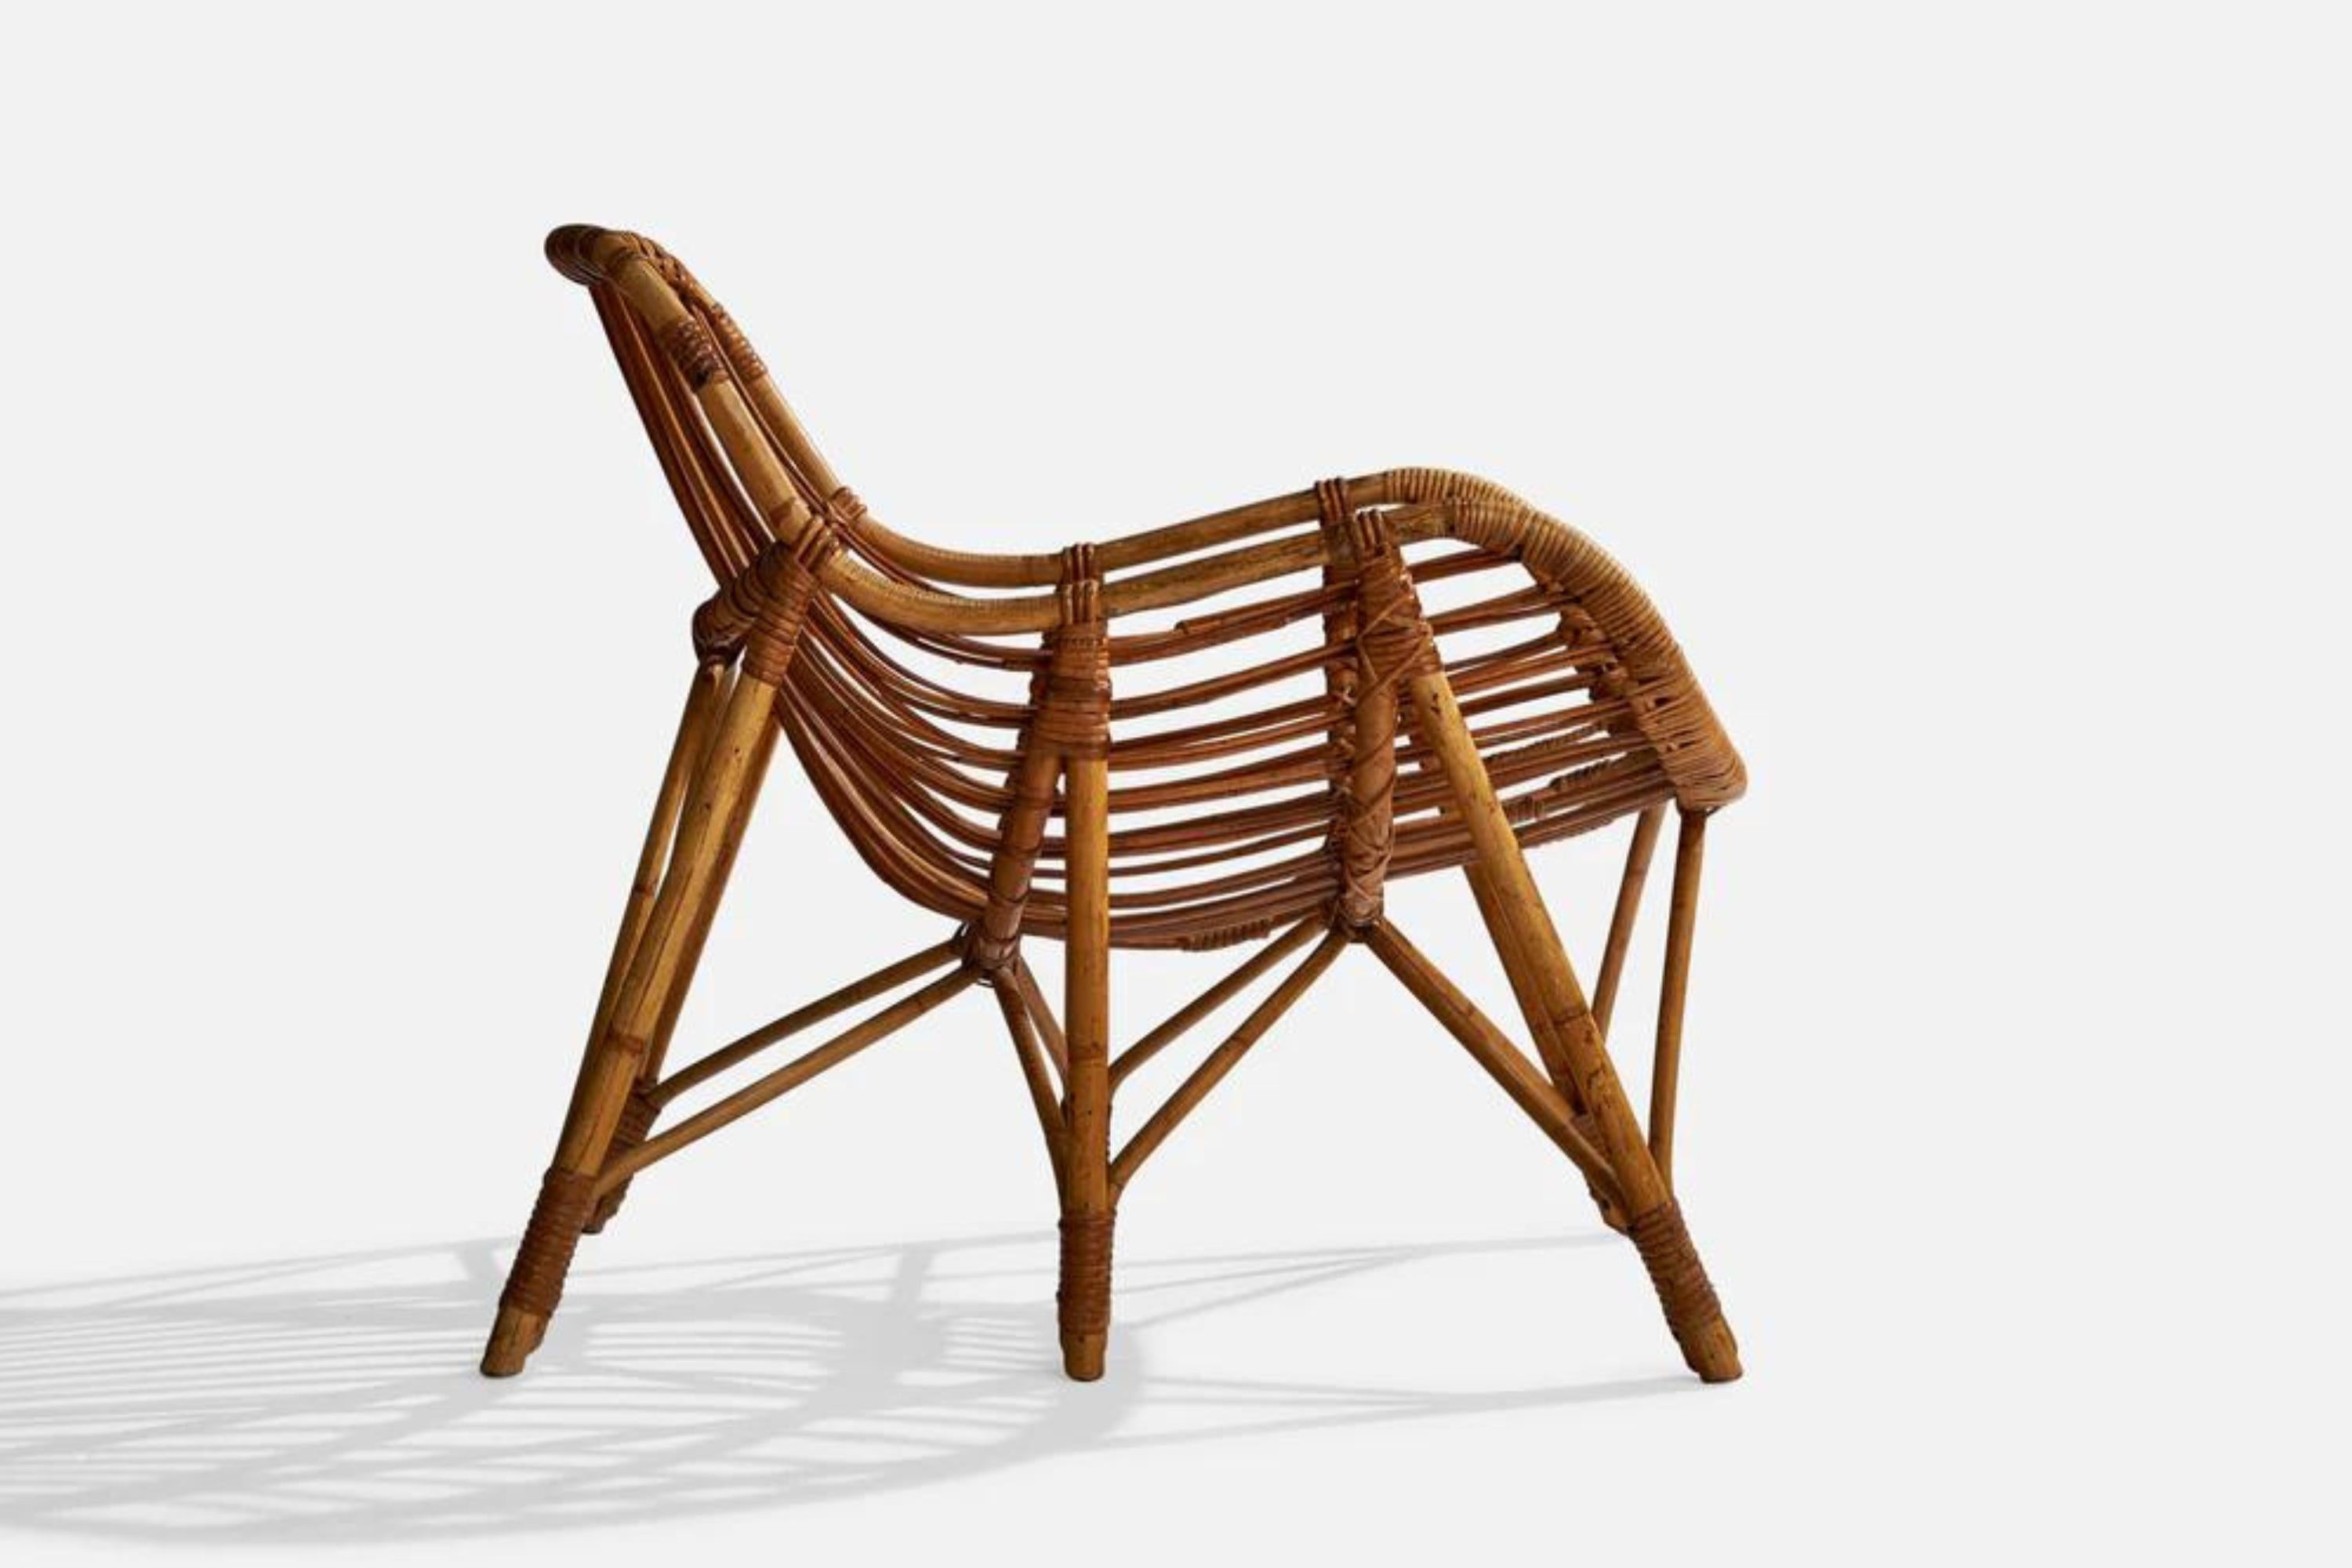 Chaise longue en bambou moulé et en rotin, conçue et produite en Finlande dans les années 1940.

Hauteur d'assise 14,25